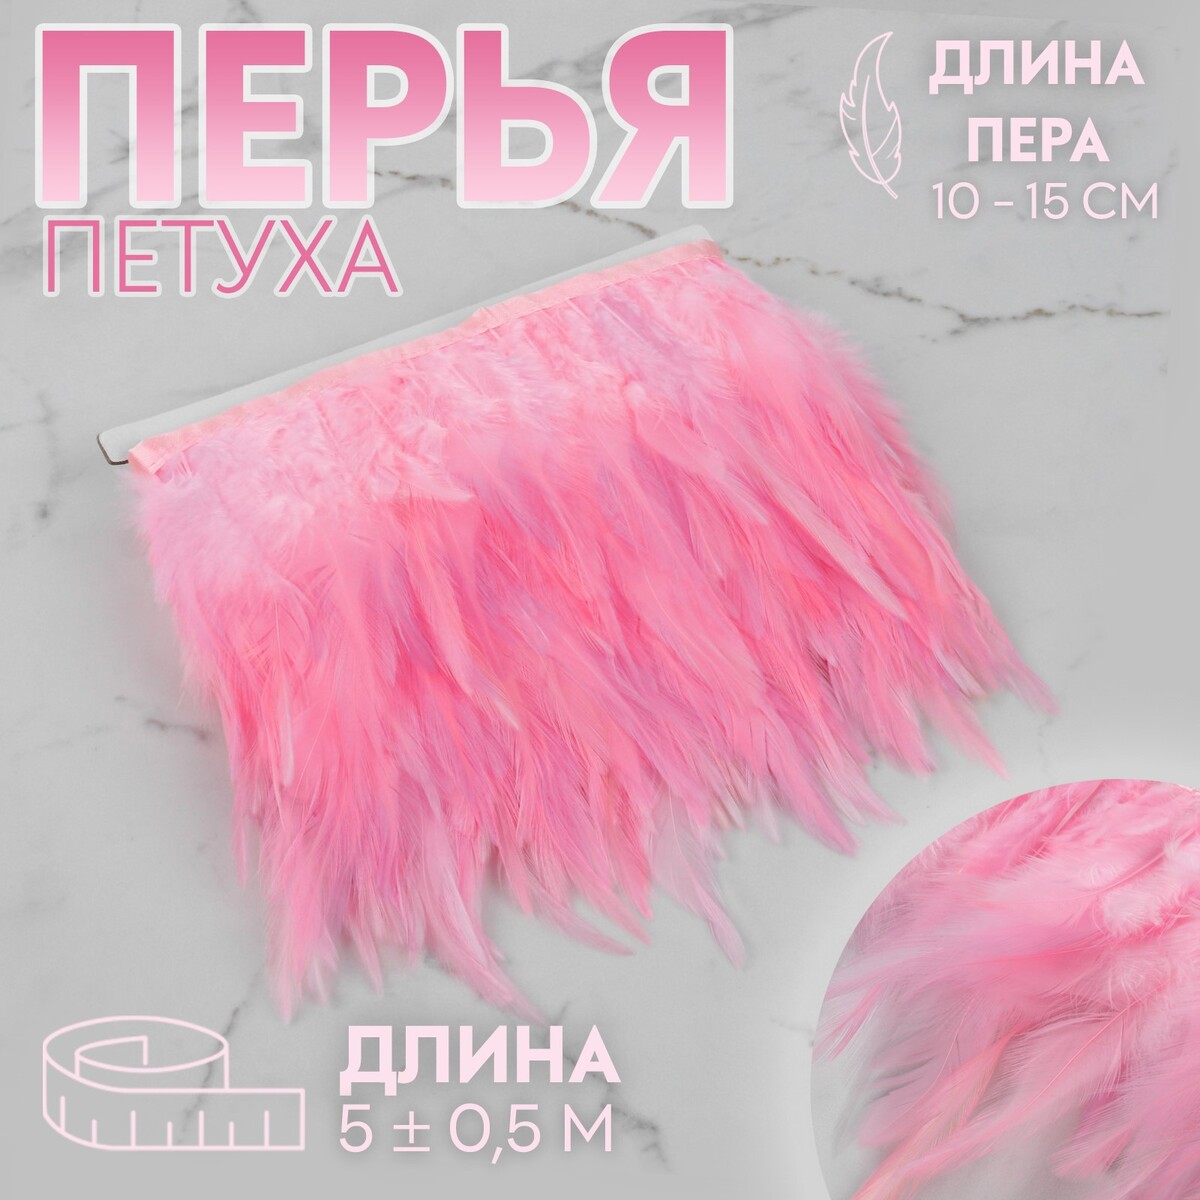 Тесьма с перьями петуха, 10-15 см, 5 ± 0,5 м, цвет розовый тесьма с перьями петуха 10 15 см 5 ± 0 5 м розовый